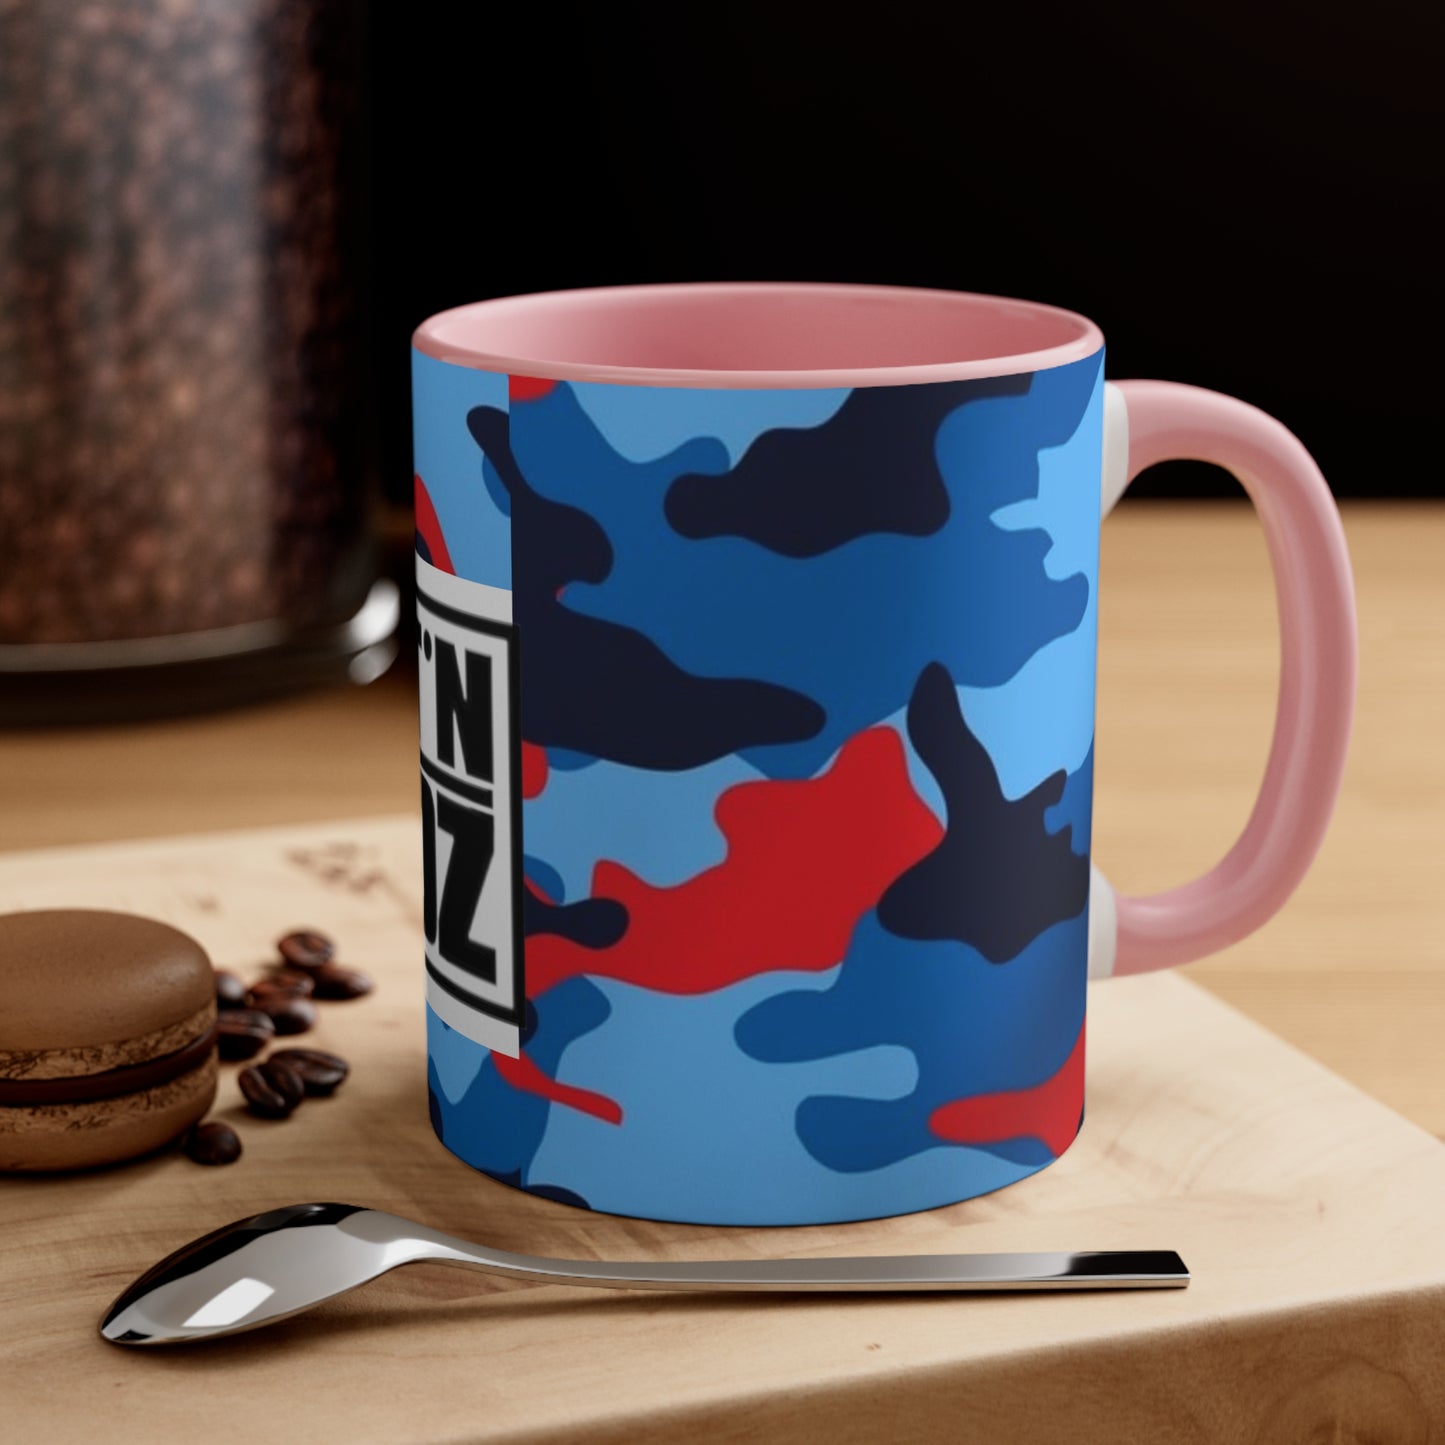 BEAT’N Da ODDz Coffee Mug, 11oz